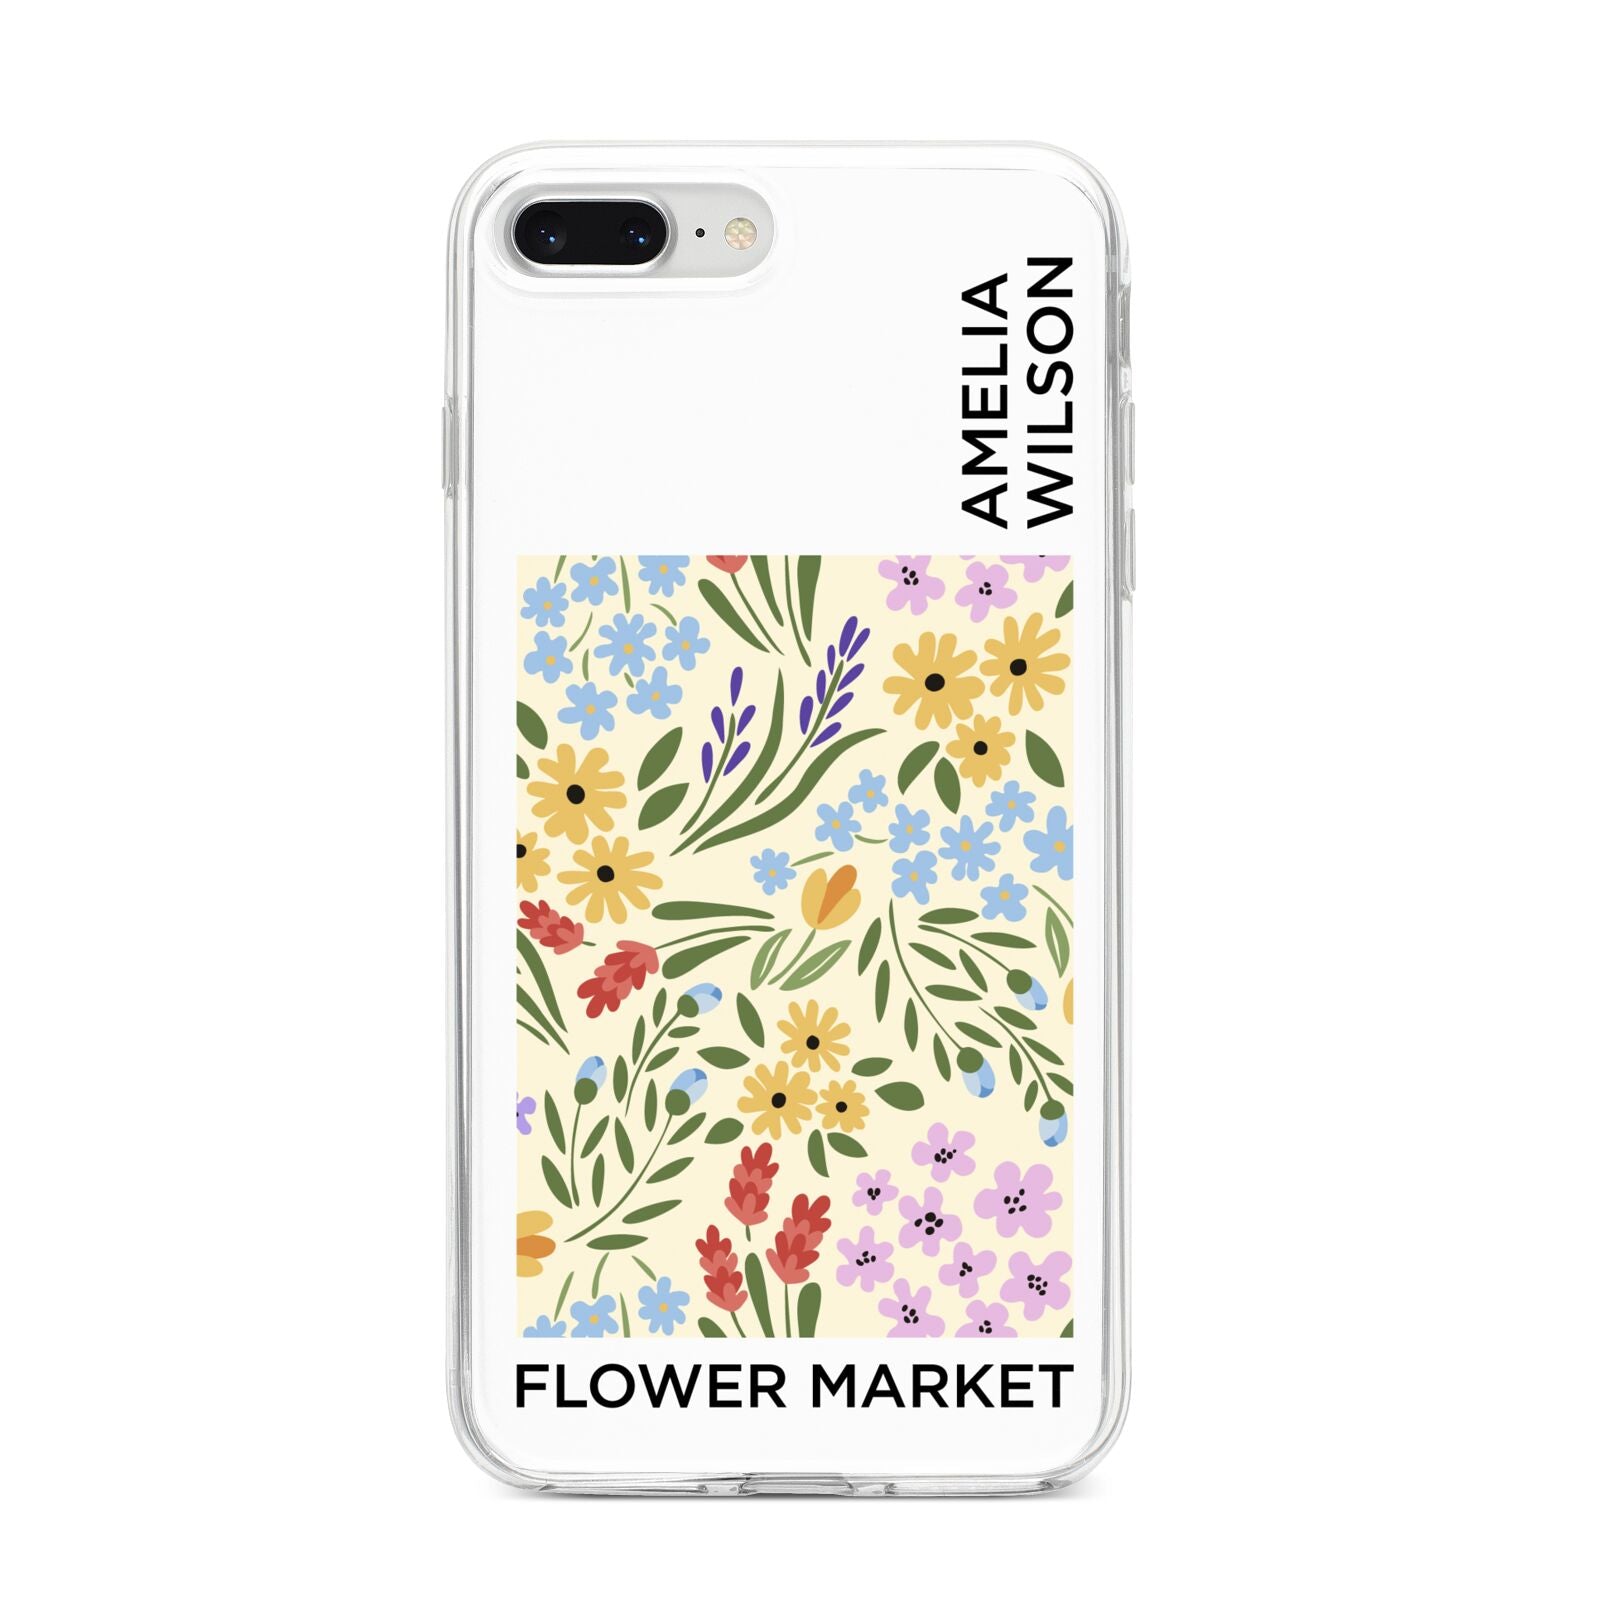 Paris Flower Market iPhone 8 Plus Bumper Case on Silver iPhone